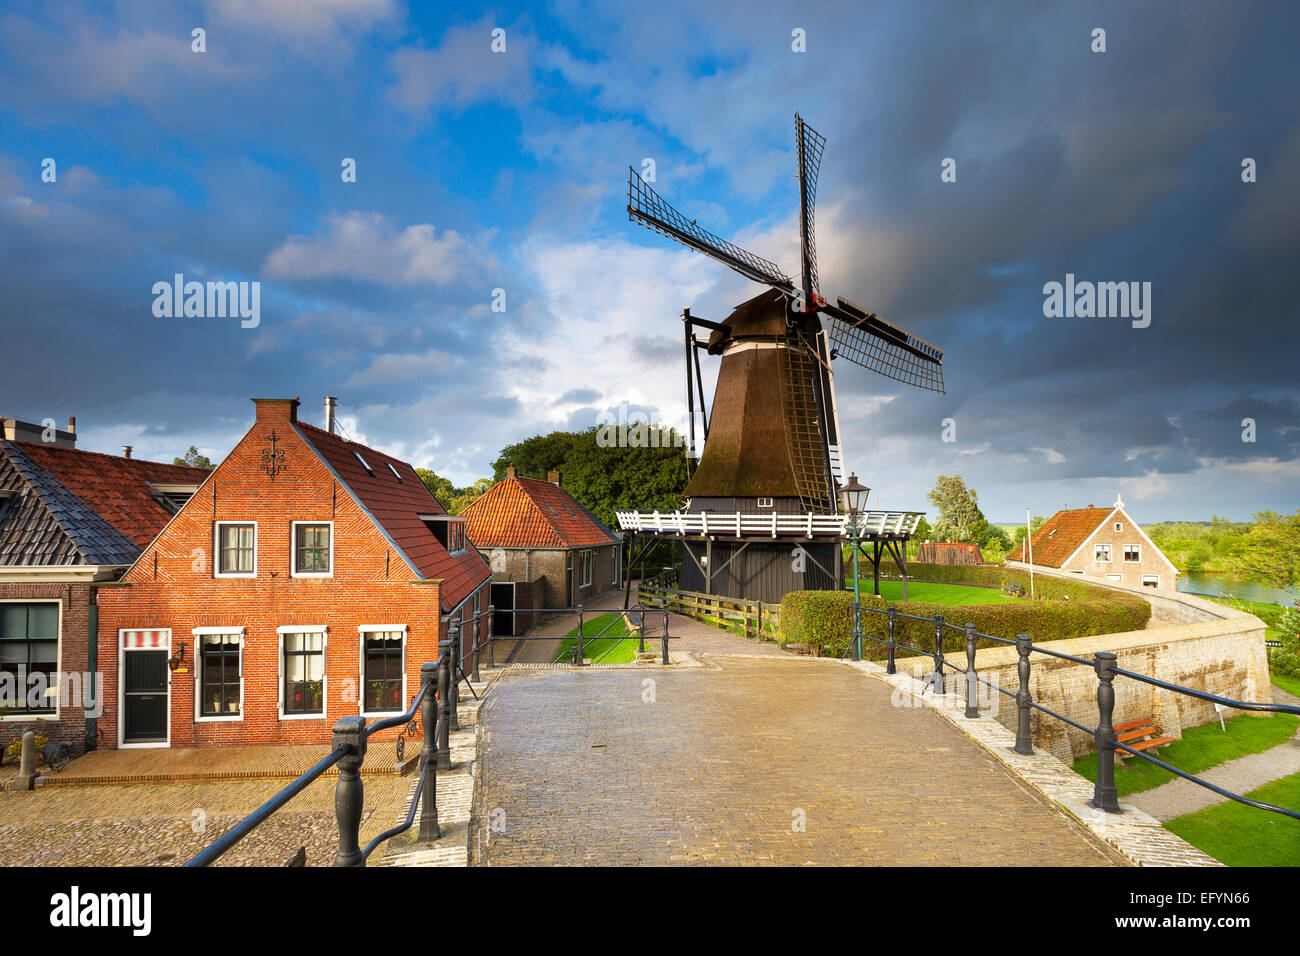 Eine typisch holländische Stadt in den Niederlanden mit alten Häusern und einer Windmühle und einer Brücke über den Kanal Stockfoto